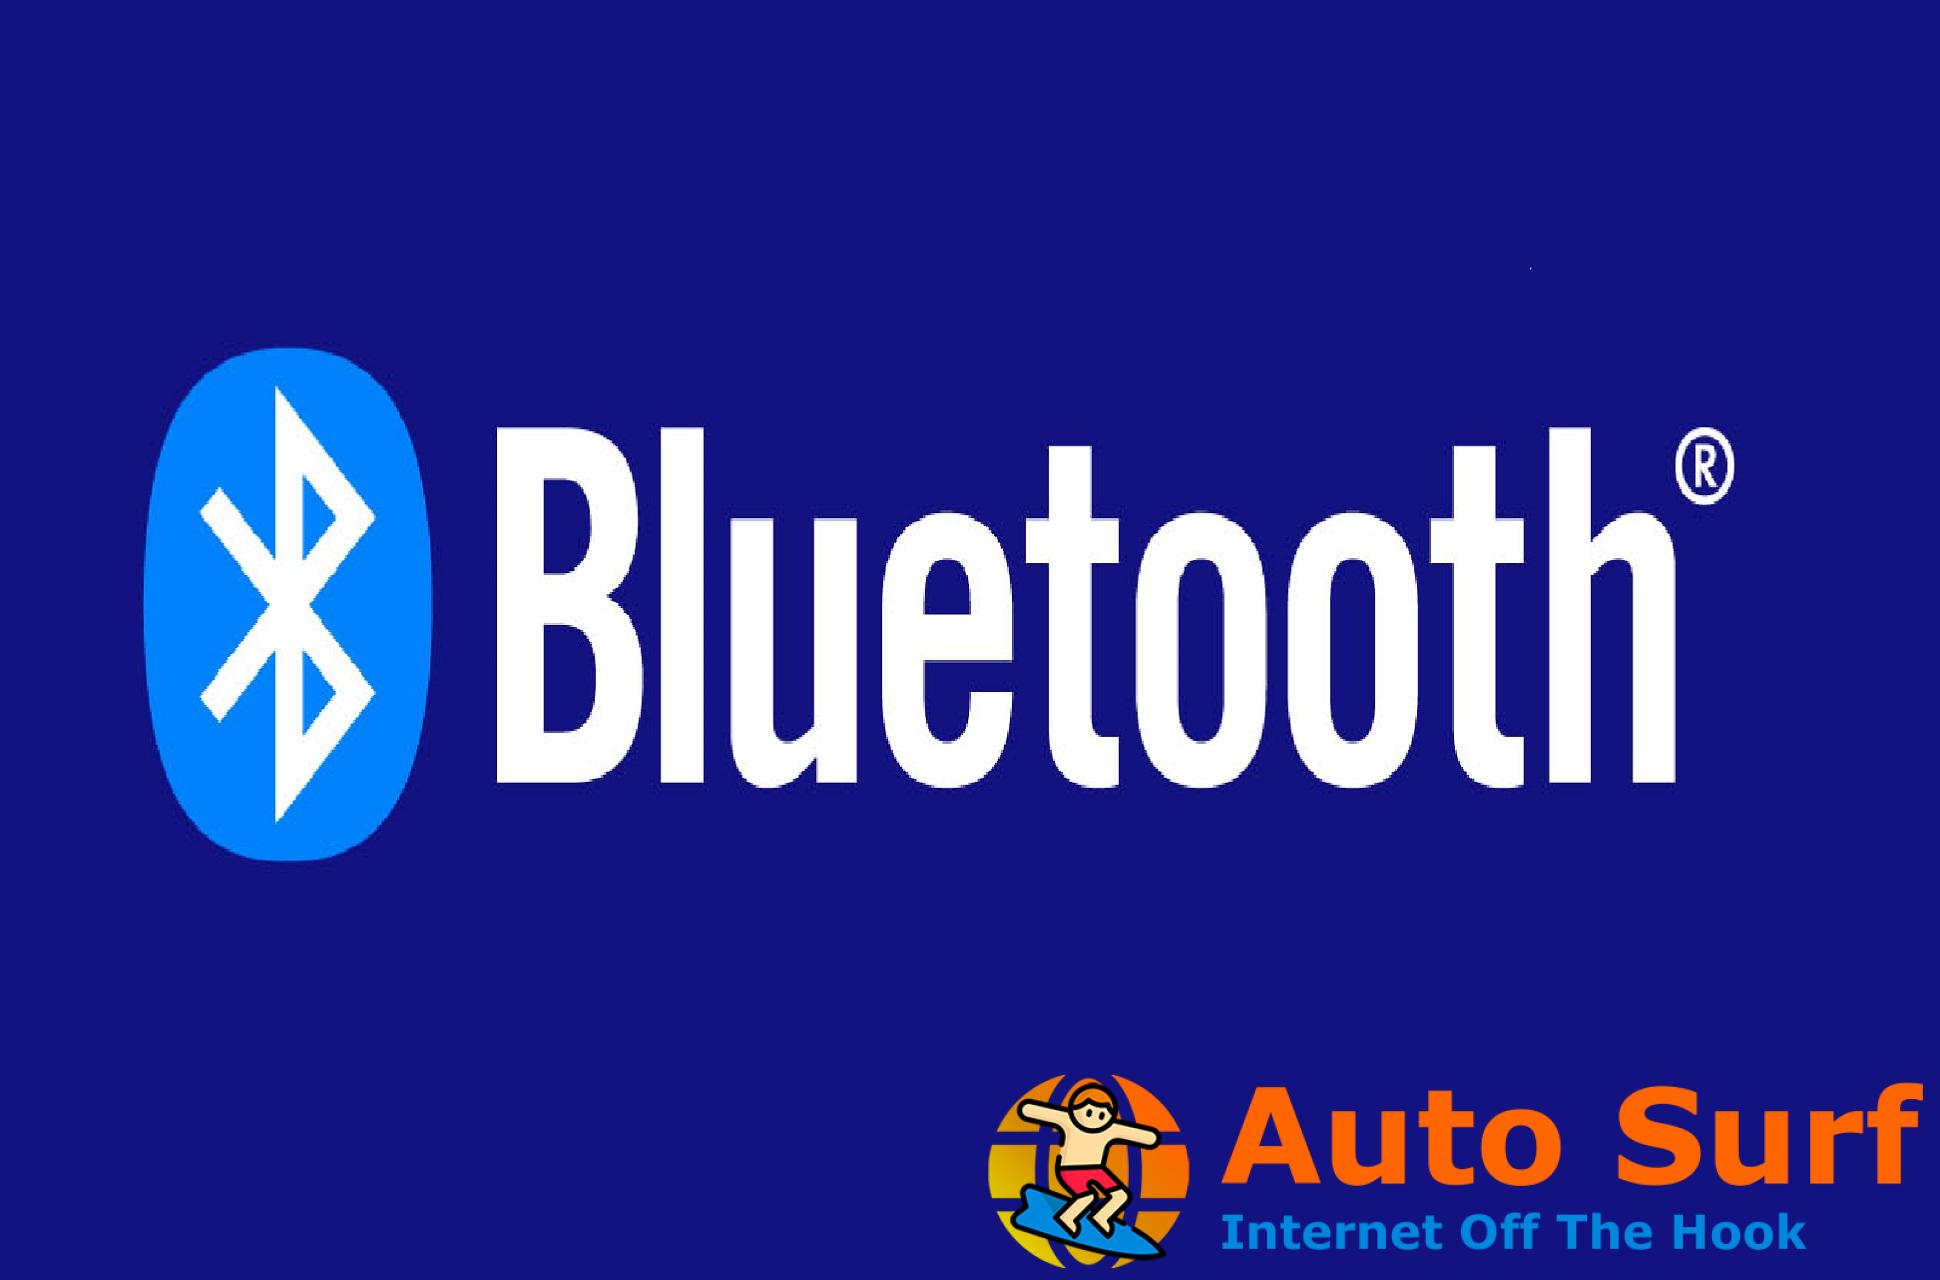 Solucionar problemas de Bluetooth